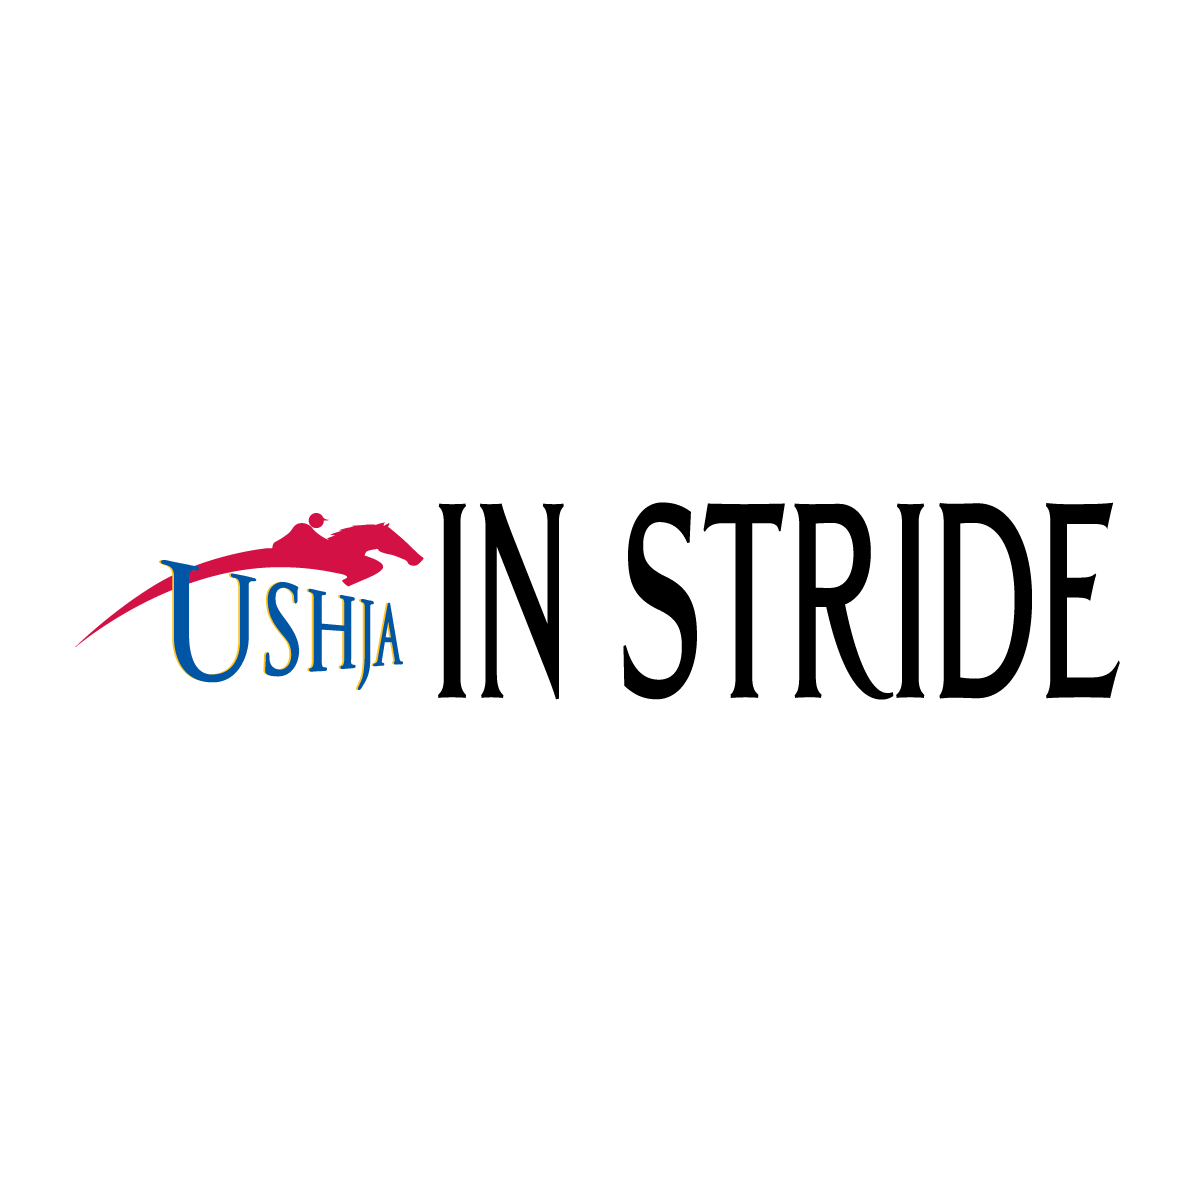 USHJA-Instride-1200x1200-primary